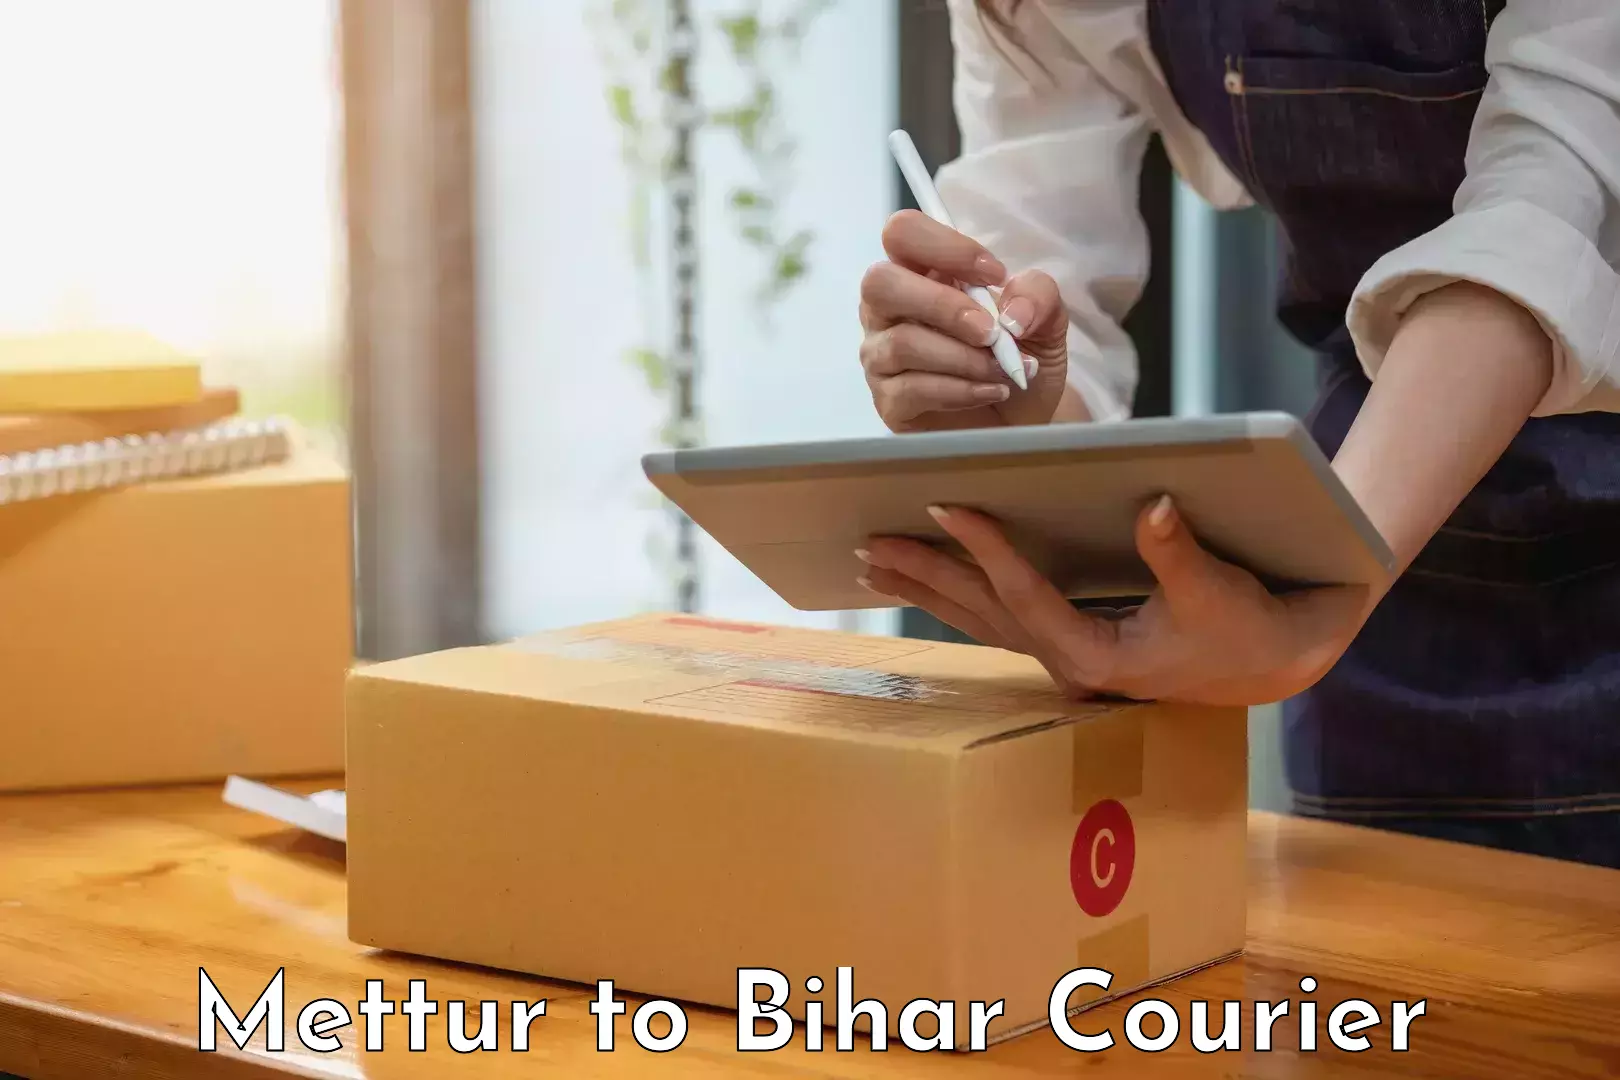 International courier networks Mettur to Bhorey